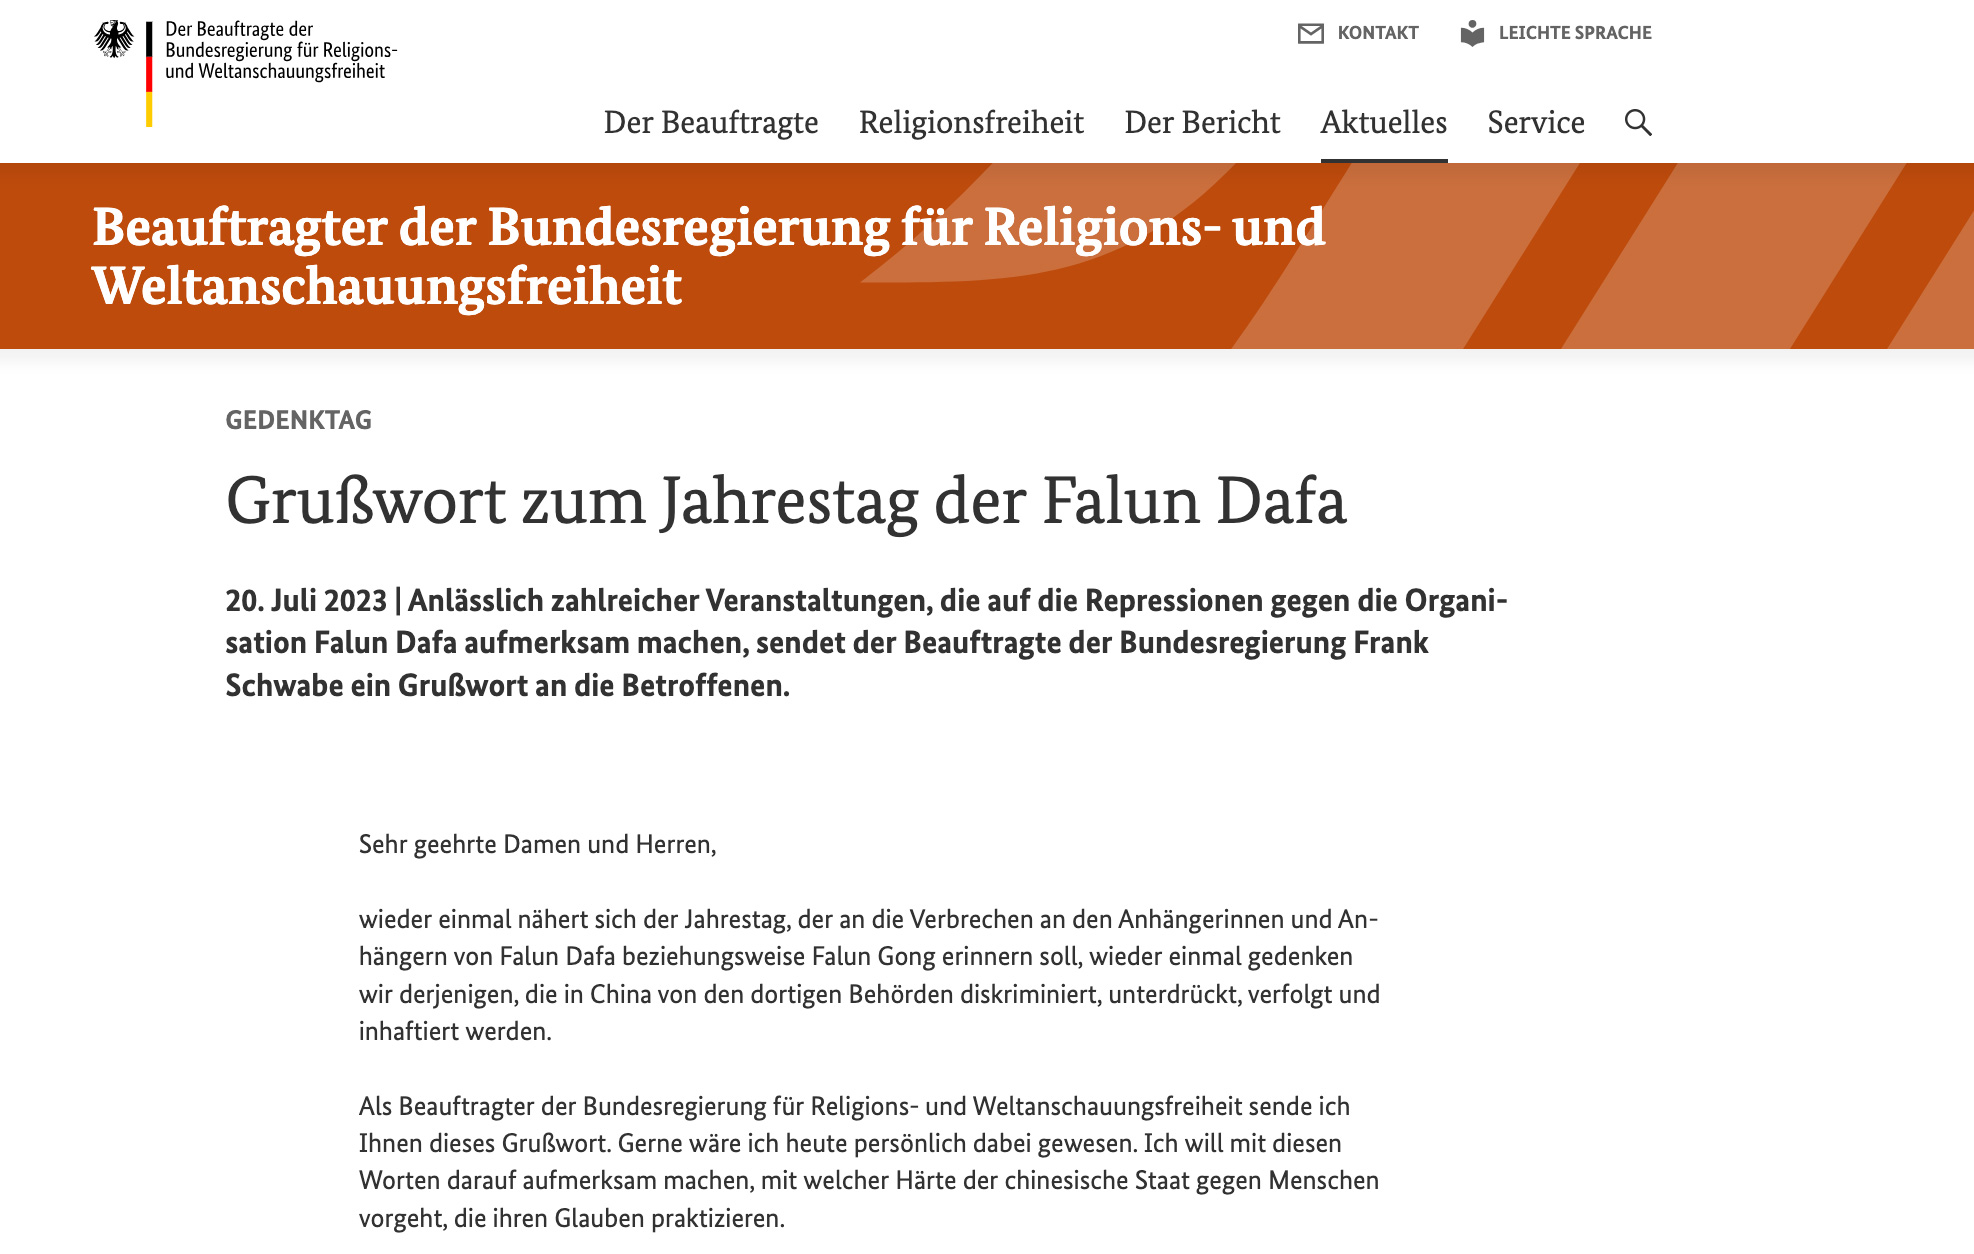 图1：德国政府网站发表施瓦博（Frank Schwabe）致法轮功的支持信的截图。